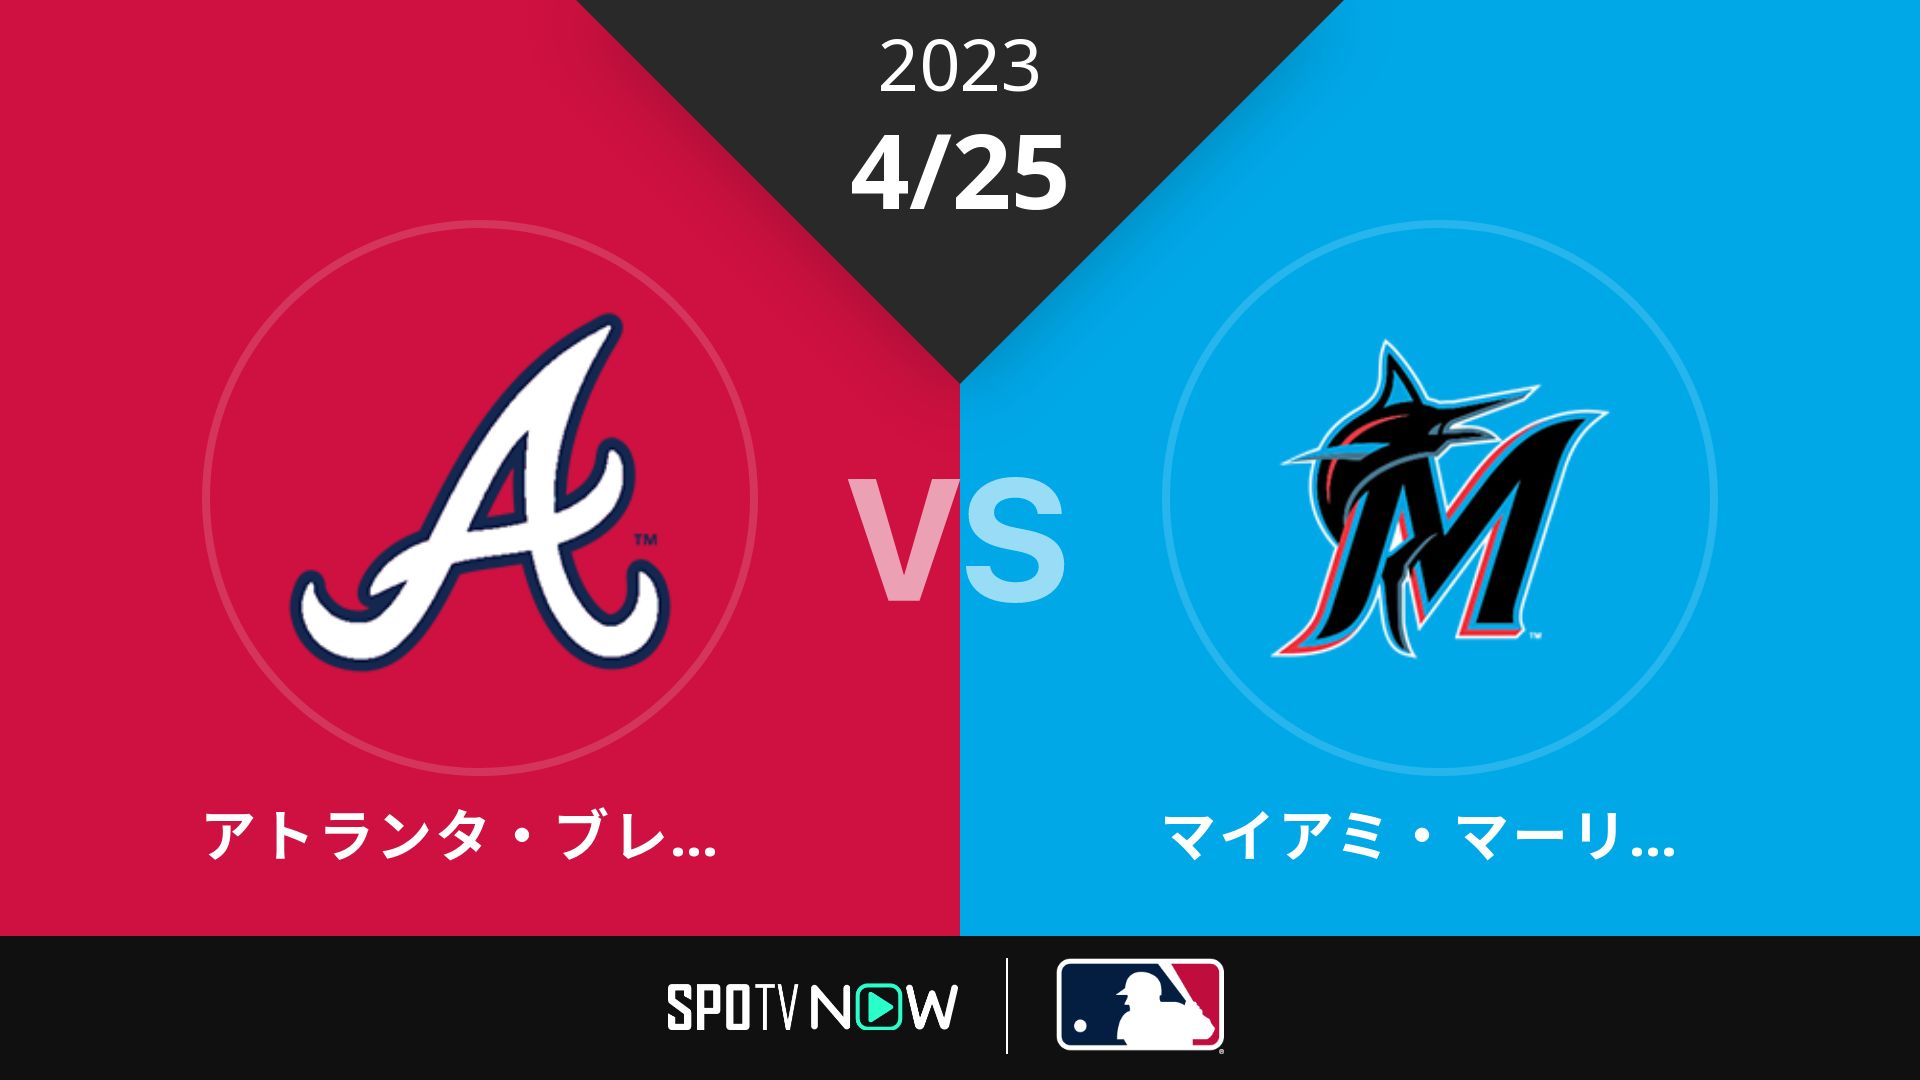 2023/4/25 ブレーブス vs マーリンズ [MLB]